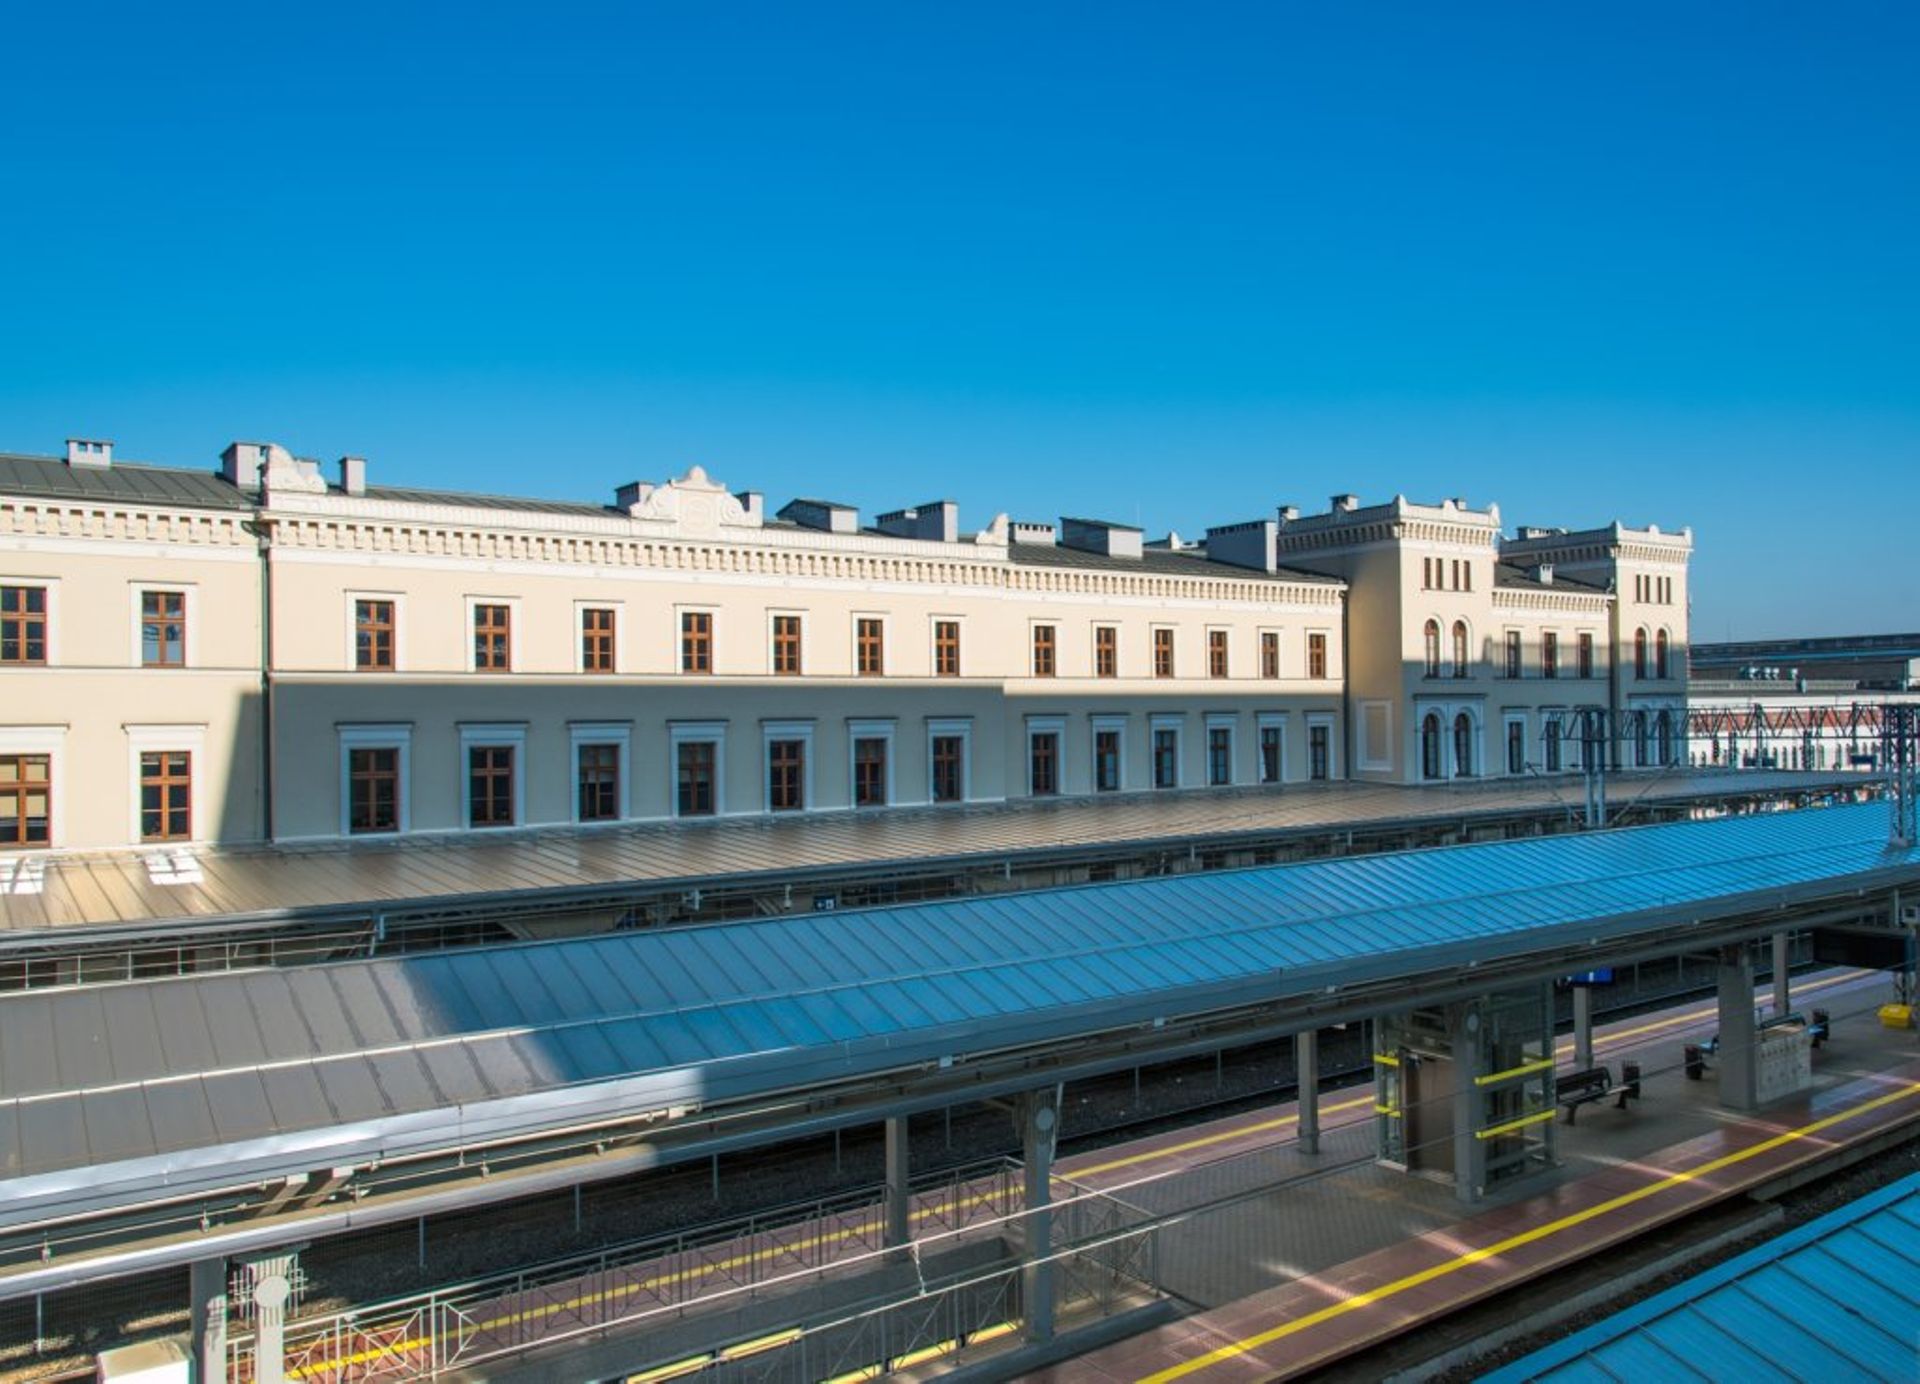  Renowacja historycznego dworca kolejowego w Bydgoszczy wyróżniona w konkursie